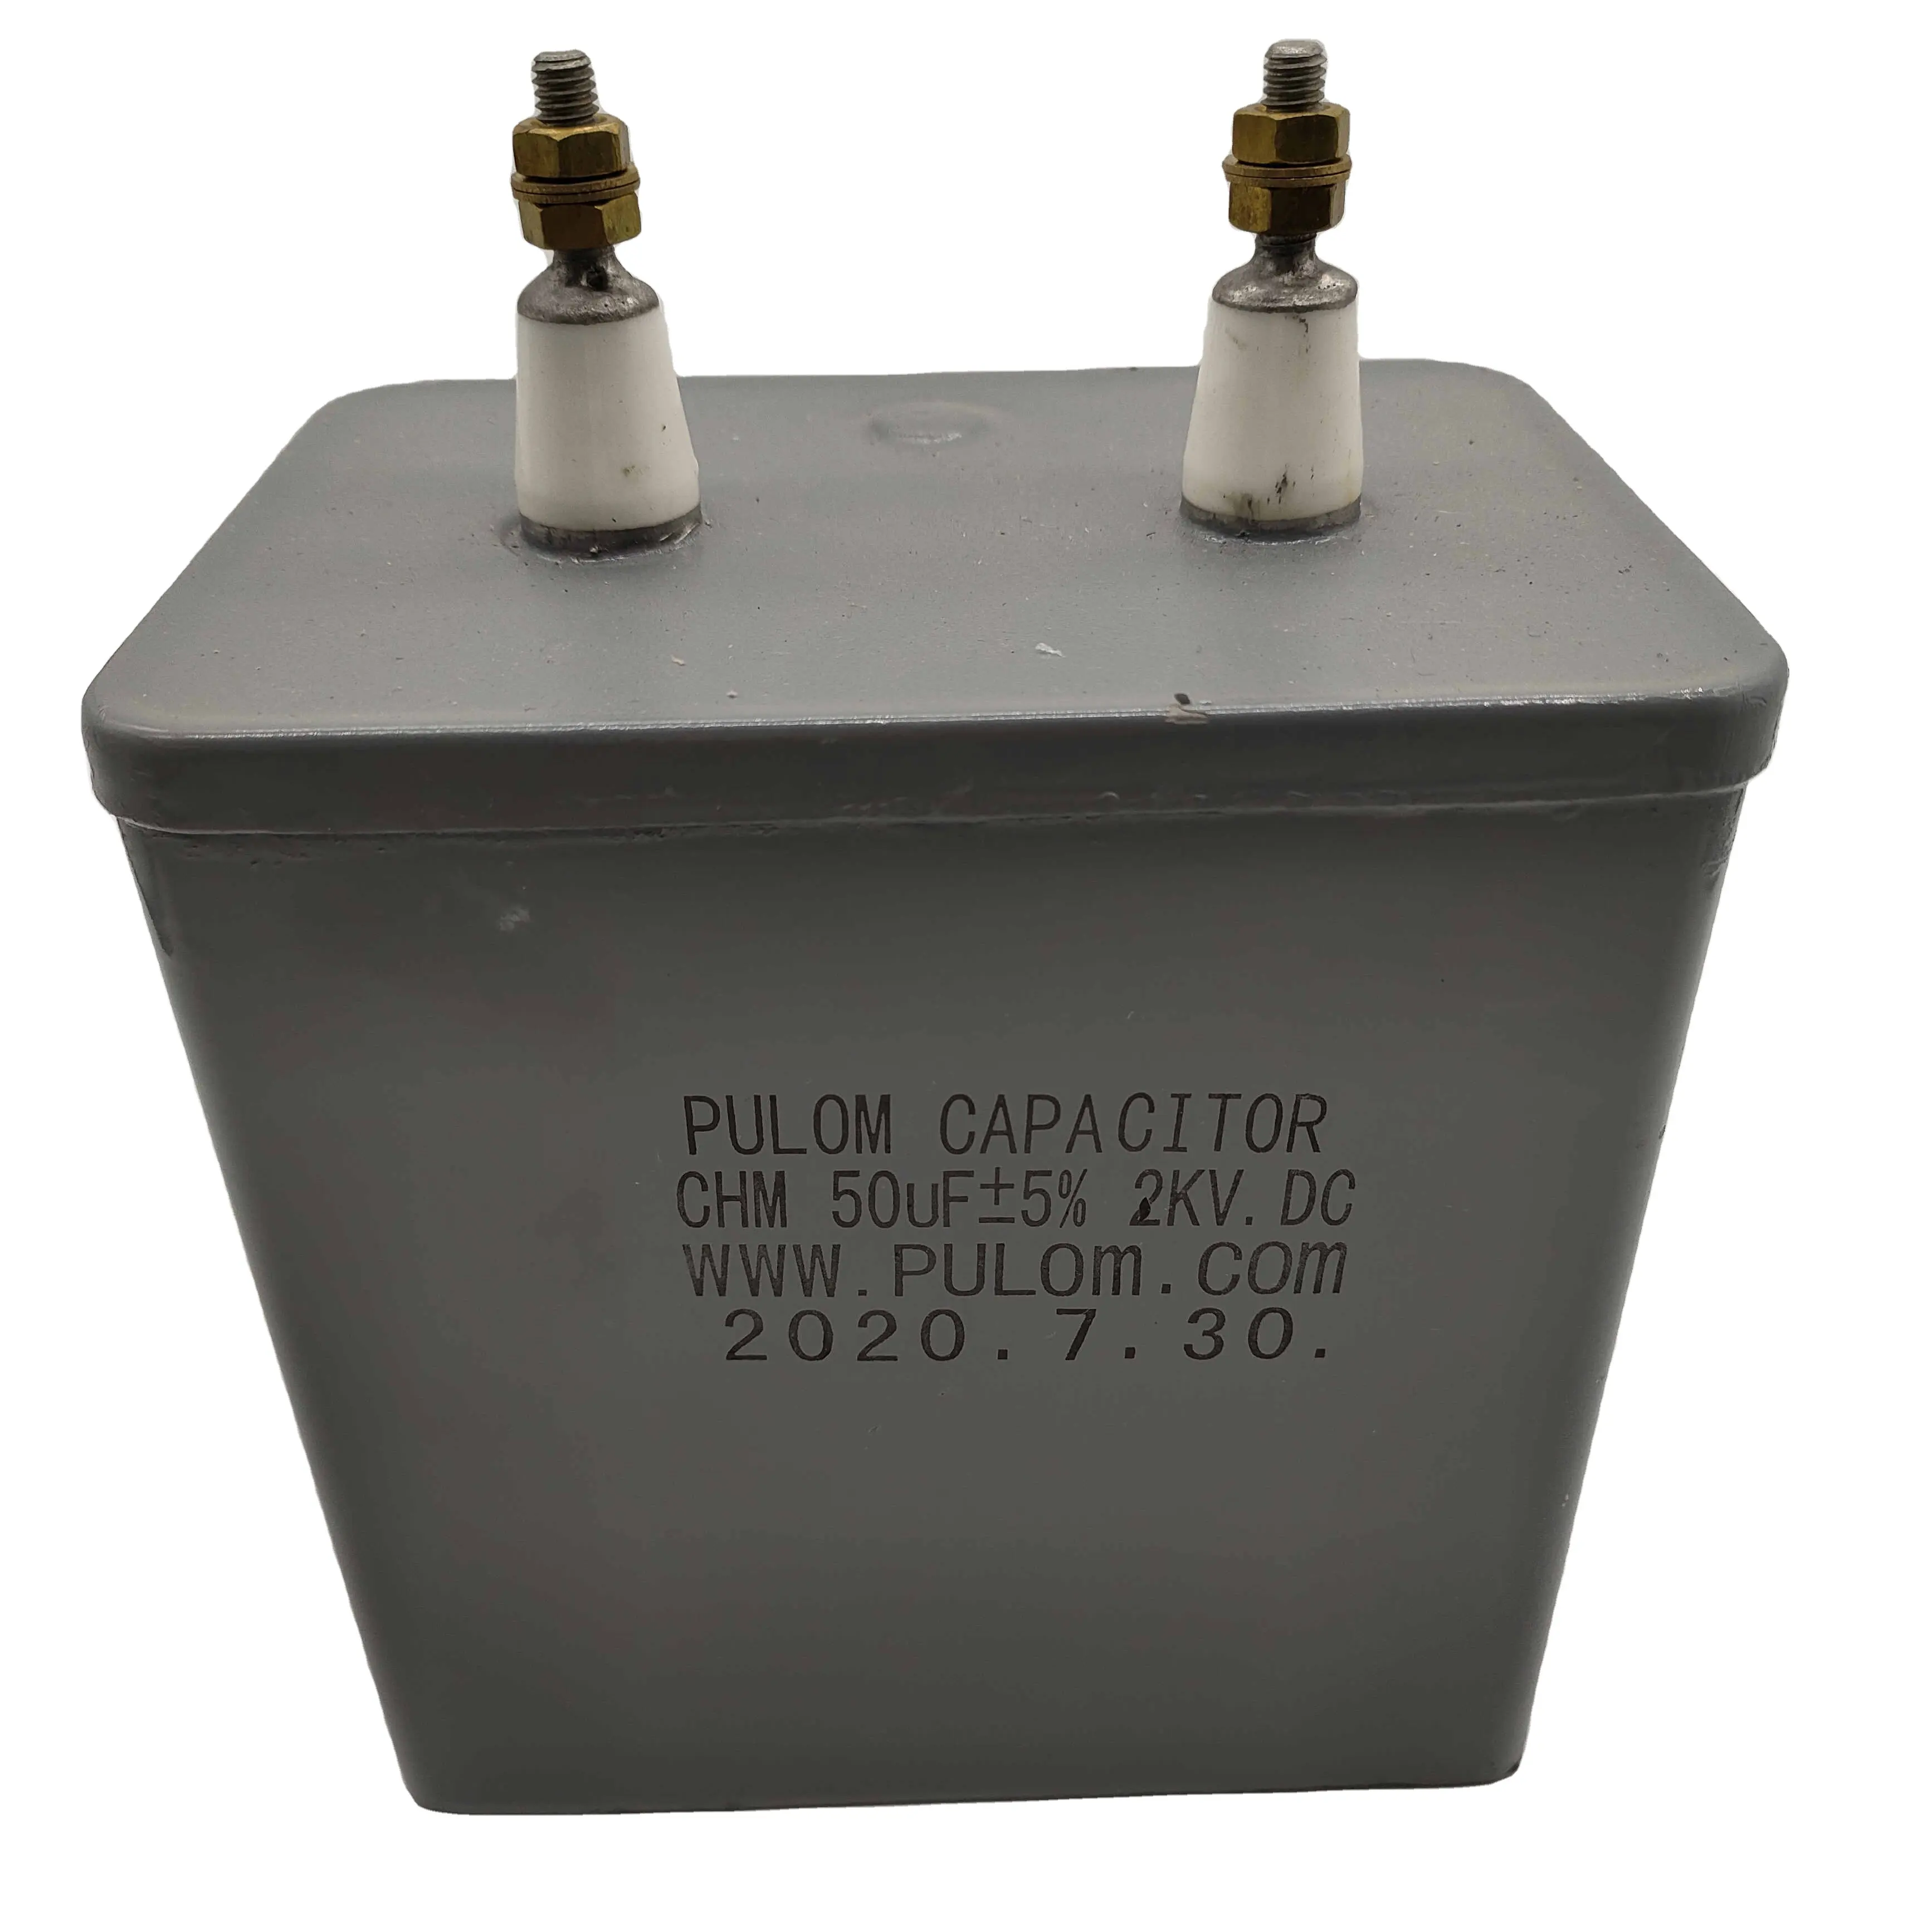 Plchm série capacitor de pulso dc immerso de óleo de alta tensão Plchm-5000-10